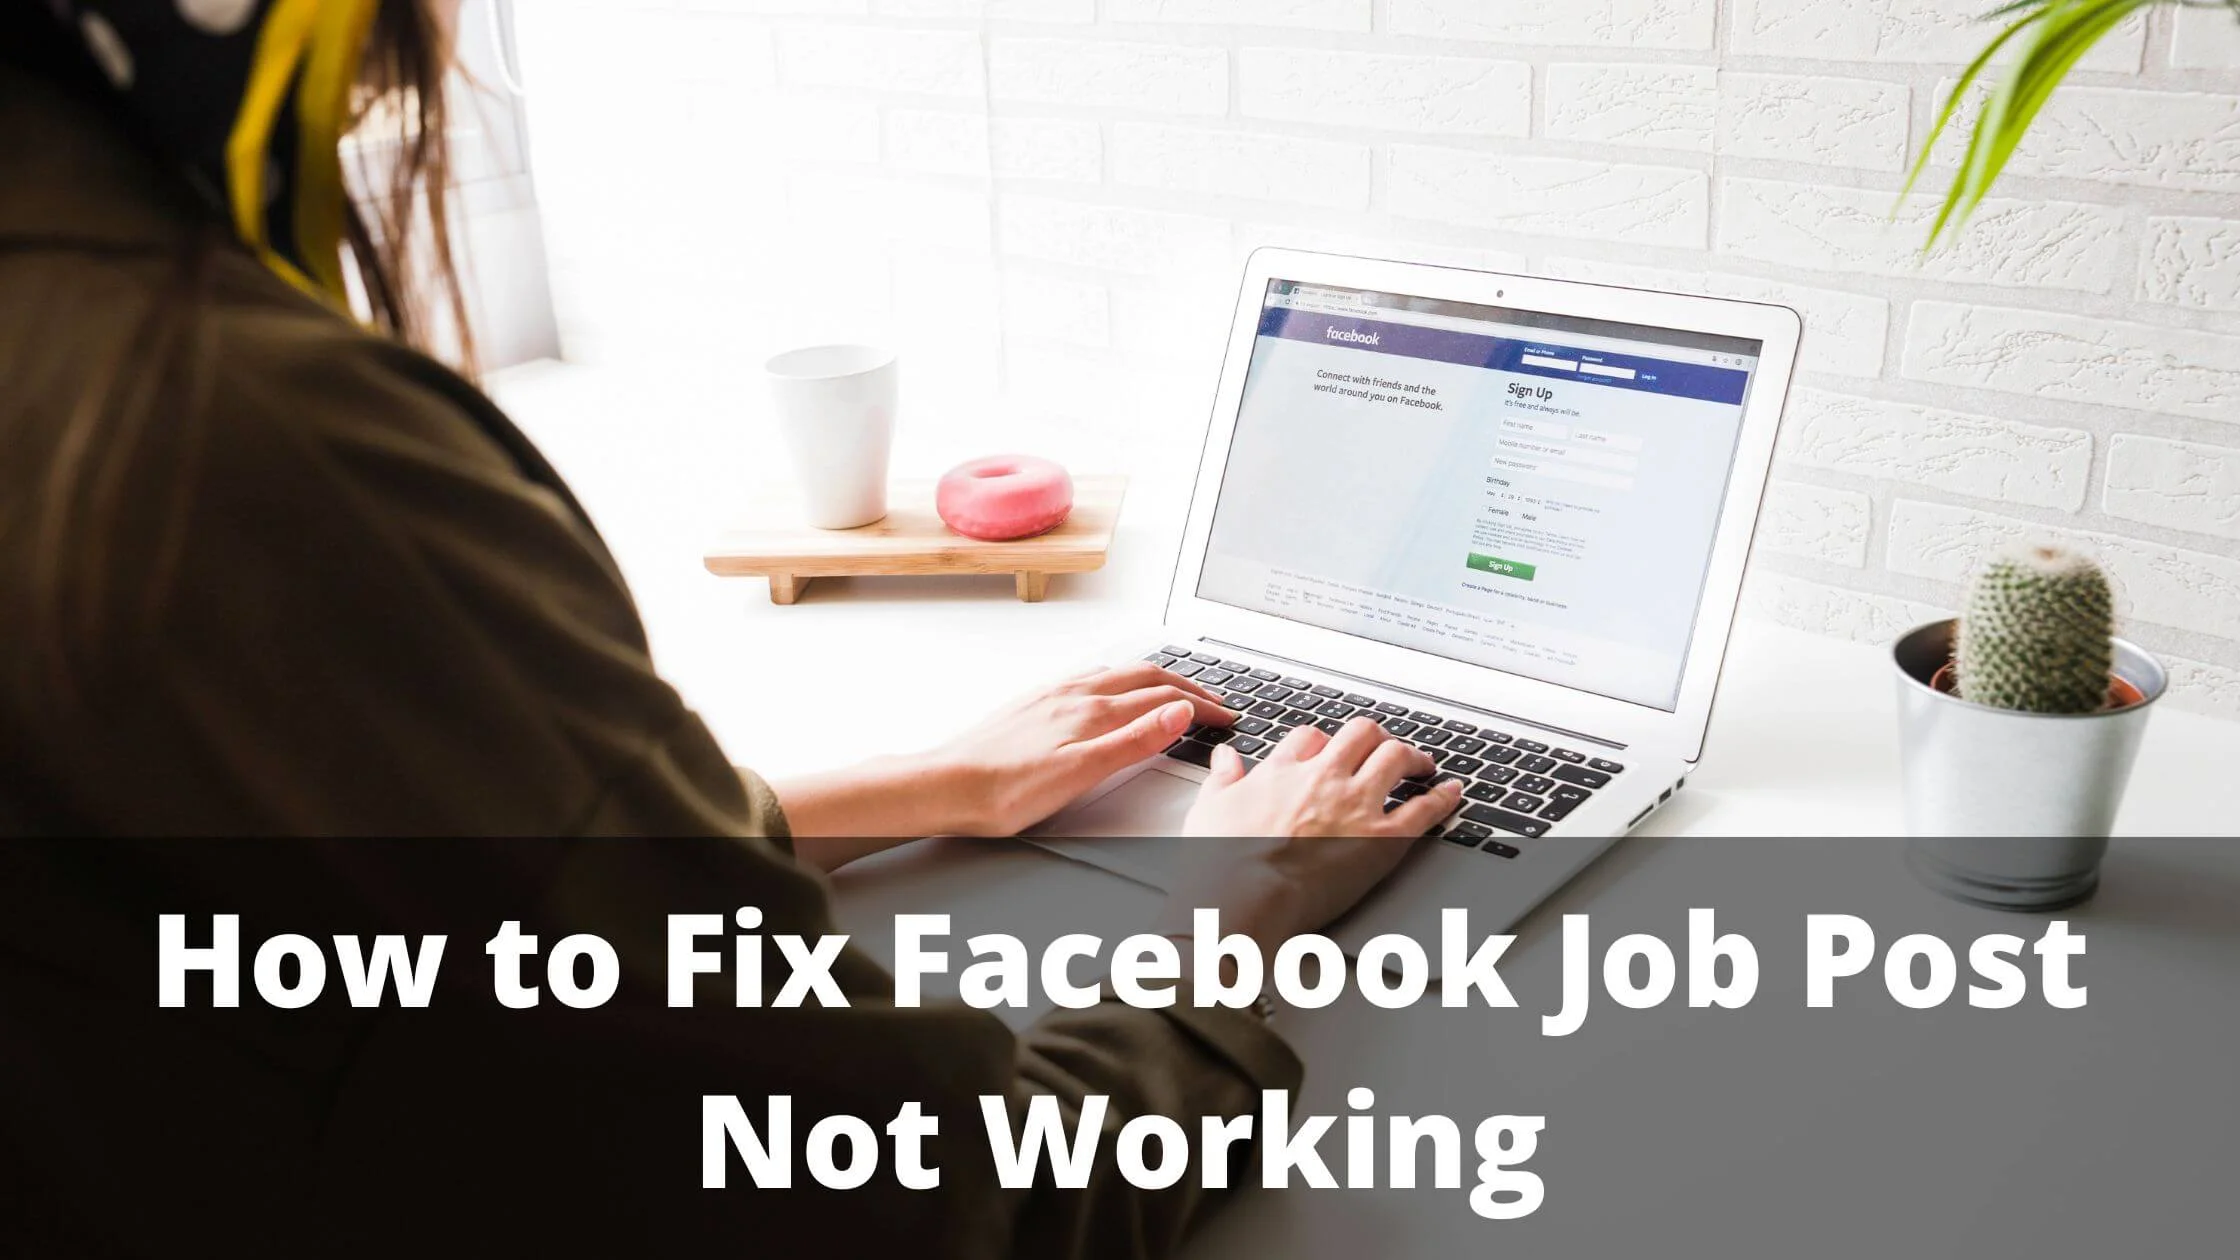 Facebook Job Post Not Working